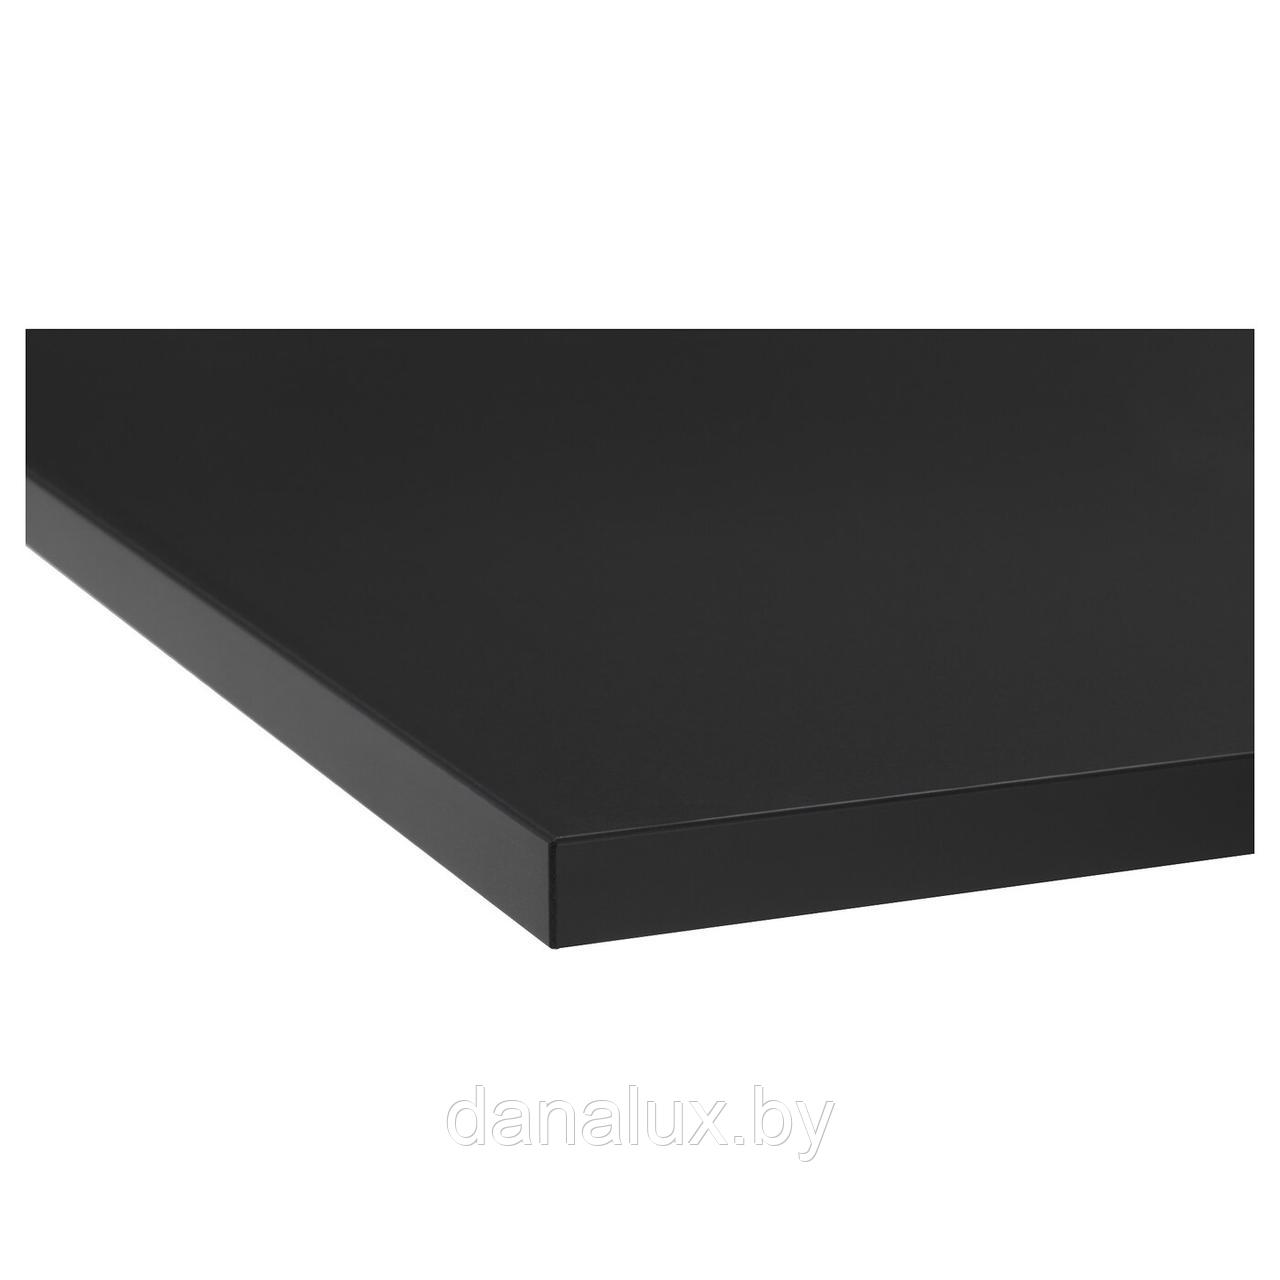 Столешница Дана Топ постформинг цвет черный 130 см + влагостойкий лак